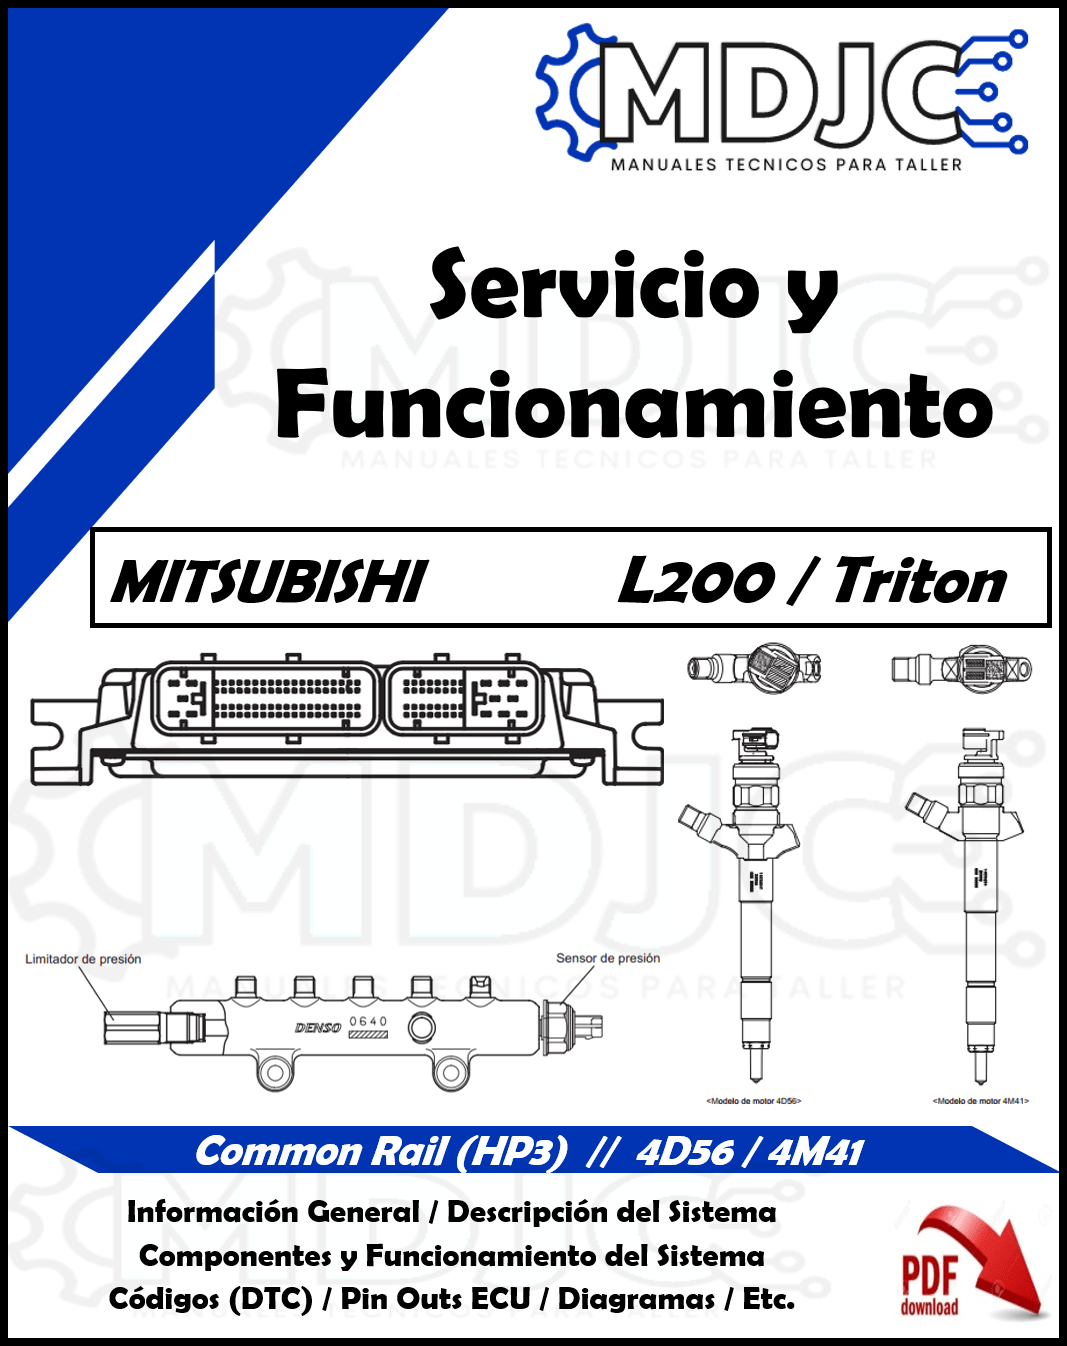 Manual para Taller (Servicio y Funcionamiento) Sistema Common Rail HP3 (Denso) / Mitsubishi L200 / T